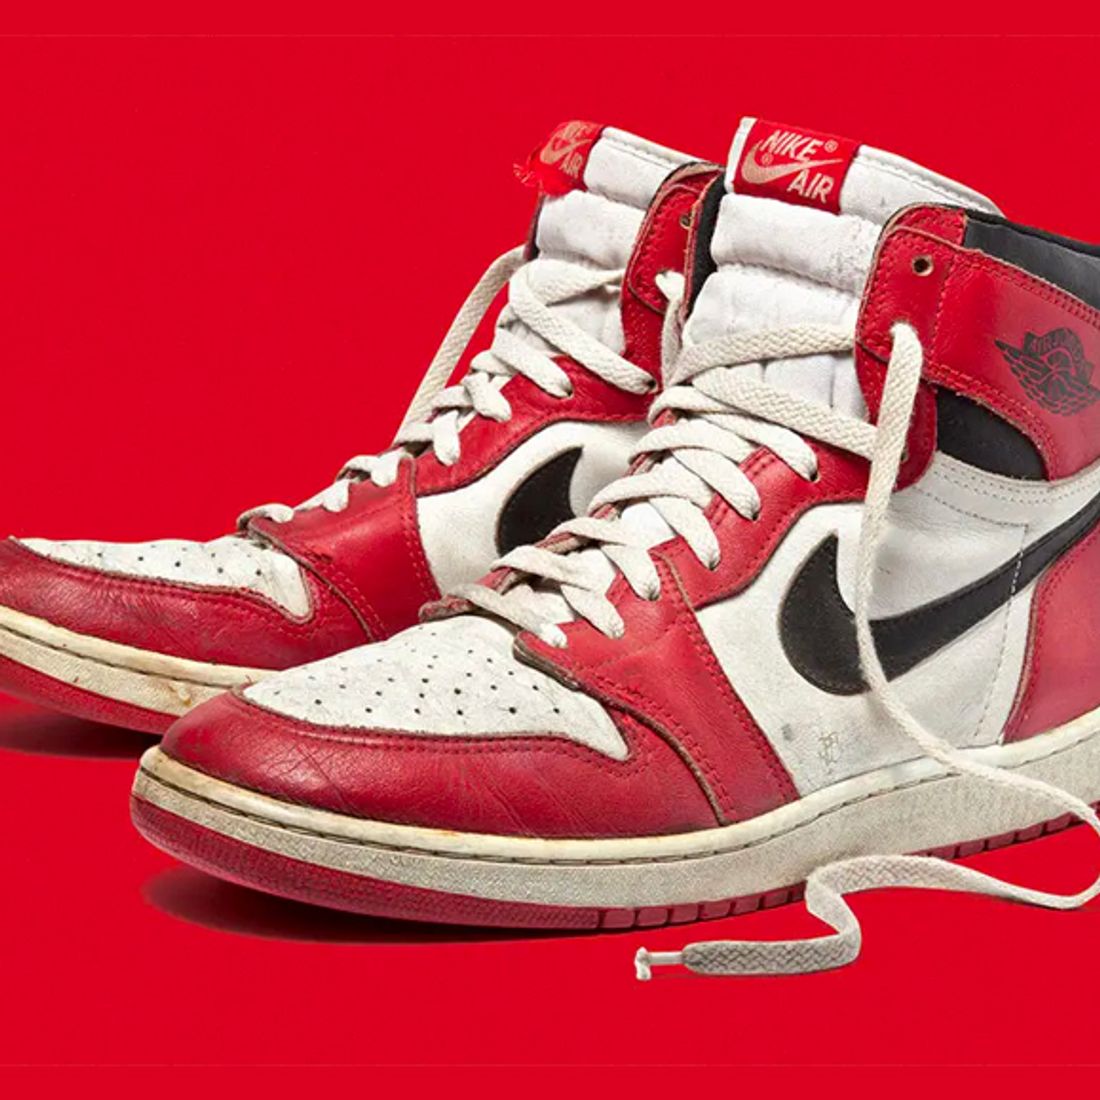 1985 Footlocker Ad Featuring Nike Air Jordan 1 Shoe